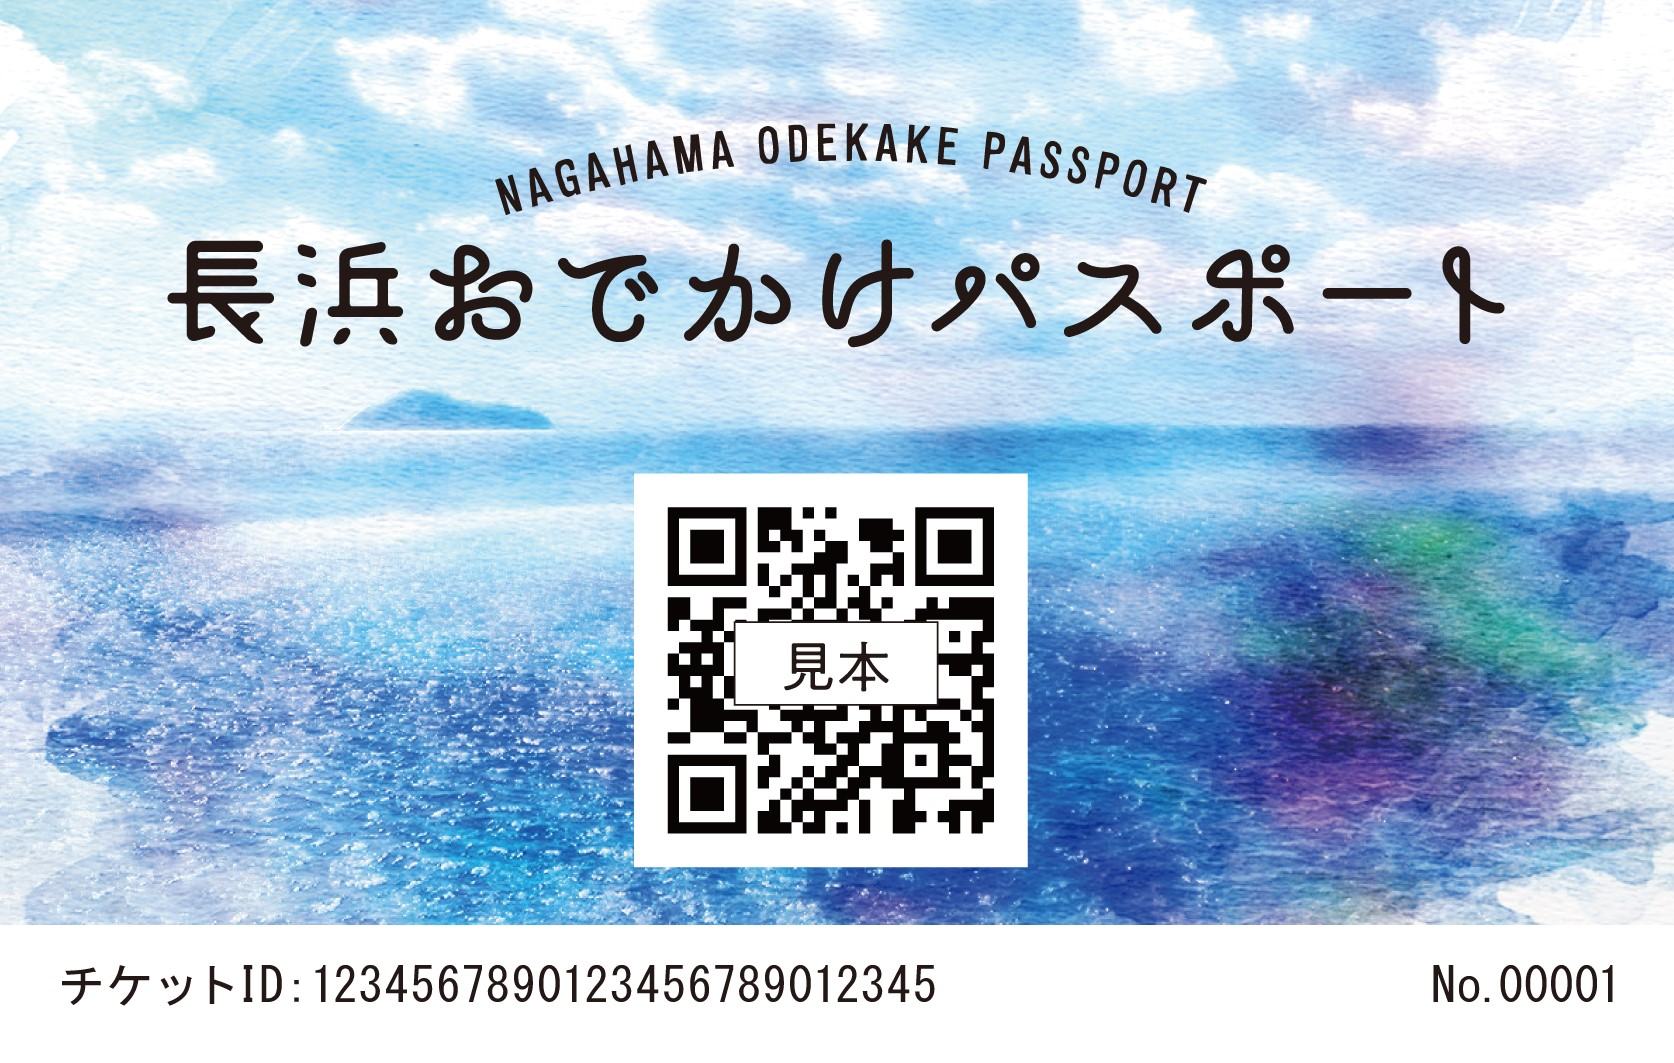 NAGAHAMA ODEKAKE PASSPORT